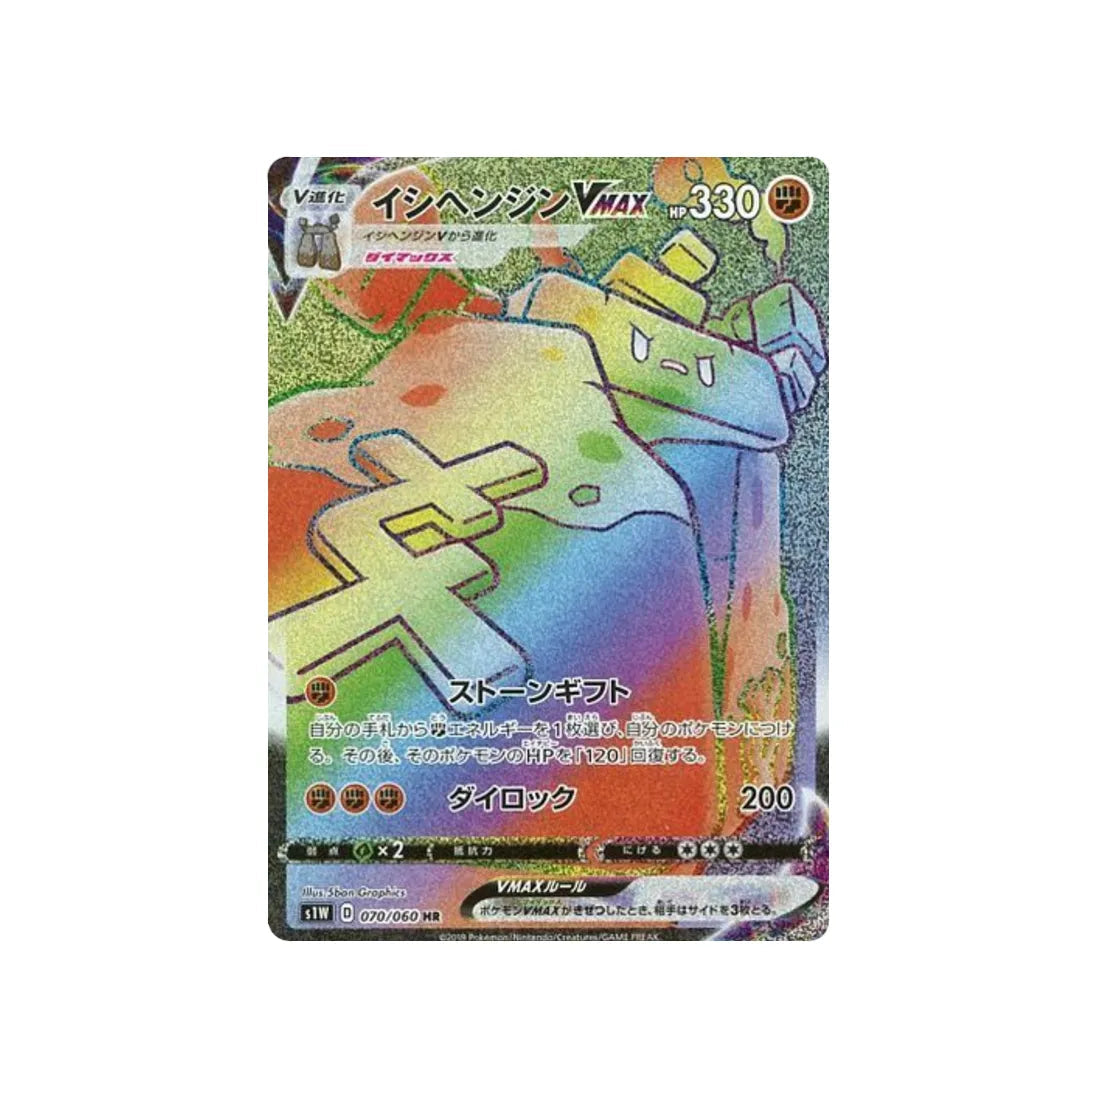 dolman-vmax-carte-pokemon-epée-s1w-070